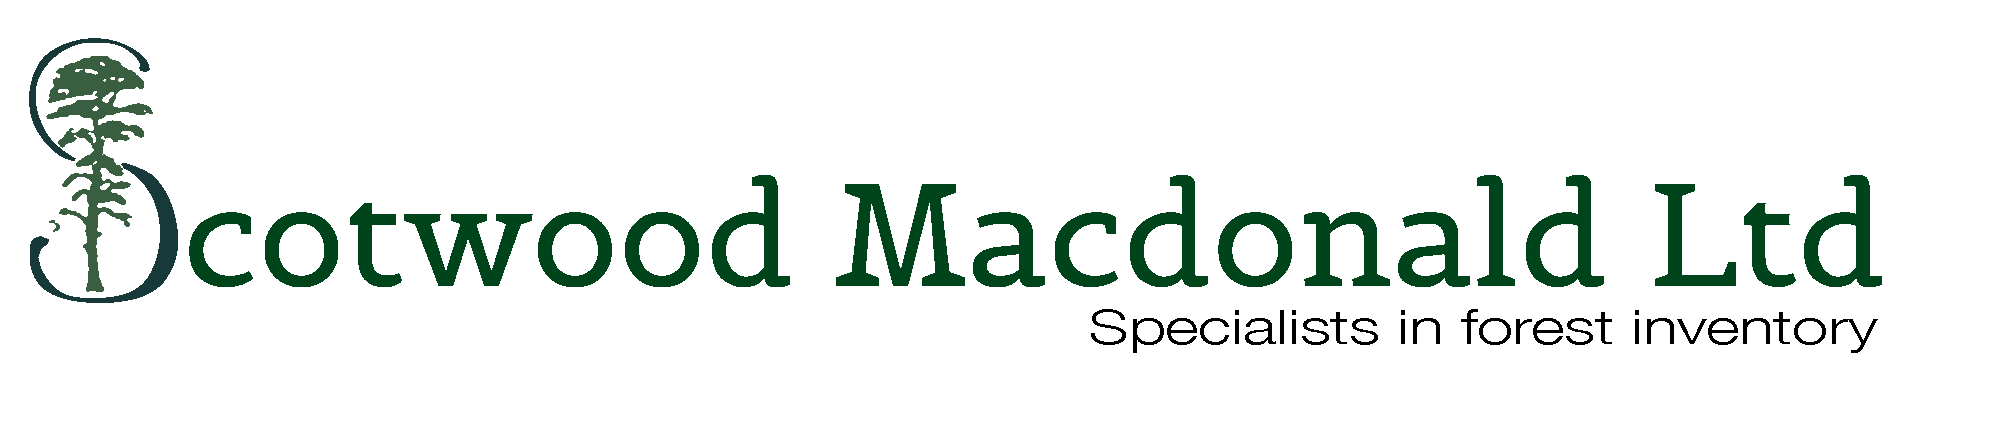 Scotwood Macdonald Ltd